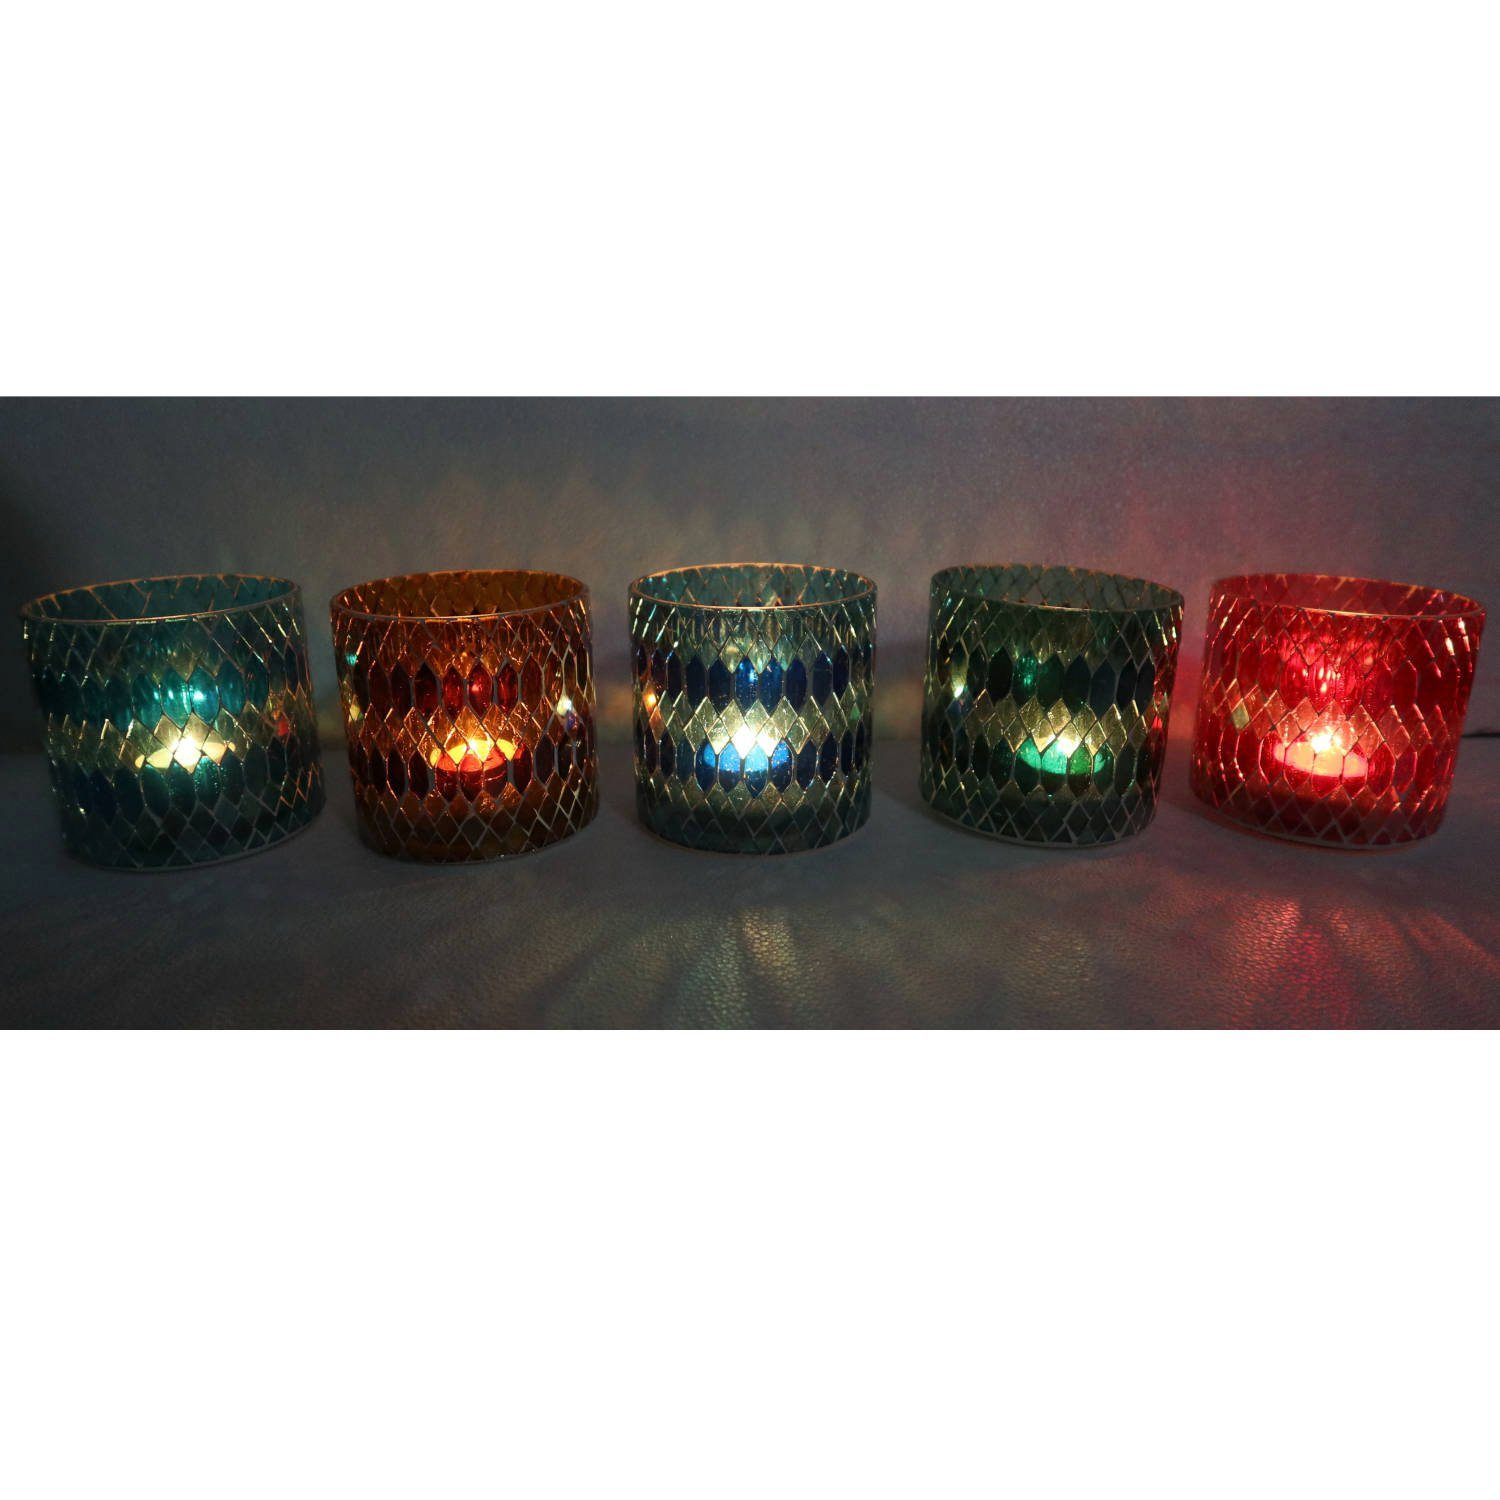 Casa Moro Windlicht Marokkanisches Mosaik Glas-Windlicht Rayan M 5er Set in 5 Farben (Weihnachten Kerzenhalter Boho Chic Kerzenständer, Teelichthalter rund in den Farben Rot, Blau, Gelb, Grün, Dunkelblau), Kunsthandwerk pur für einfach schöner wohnen